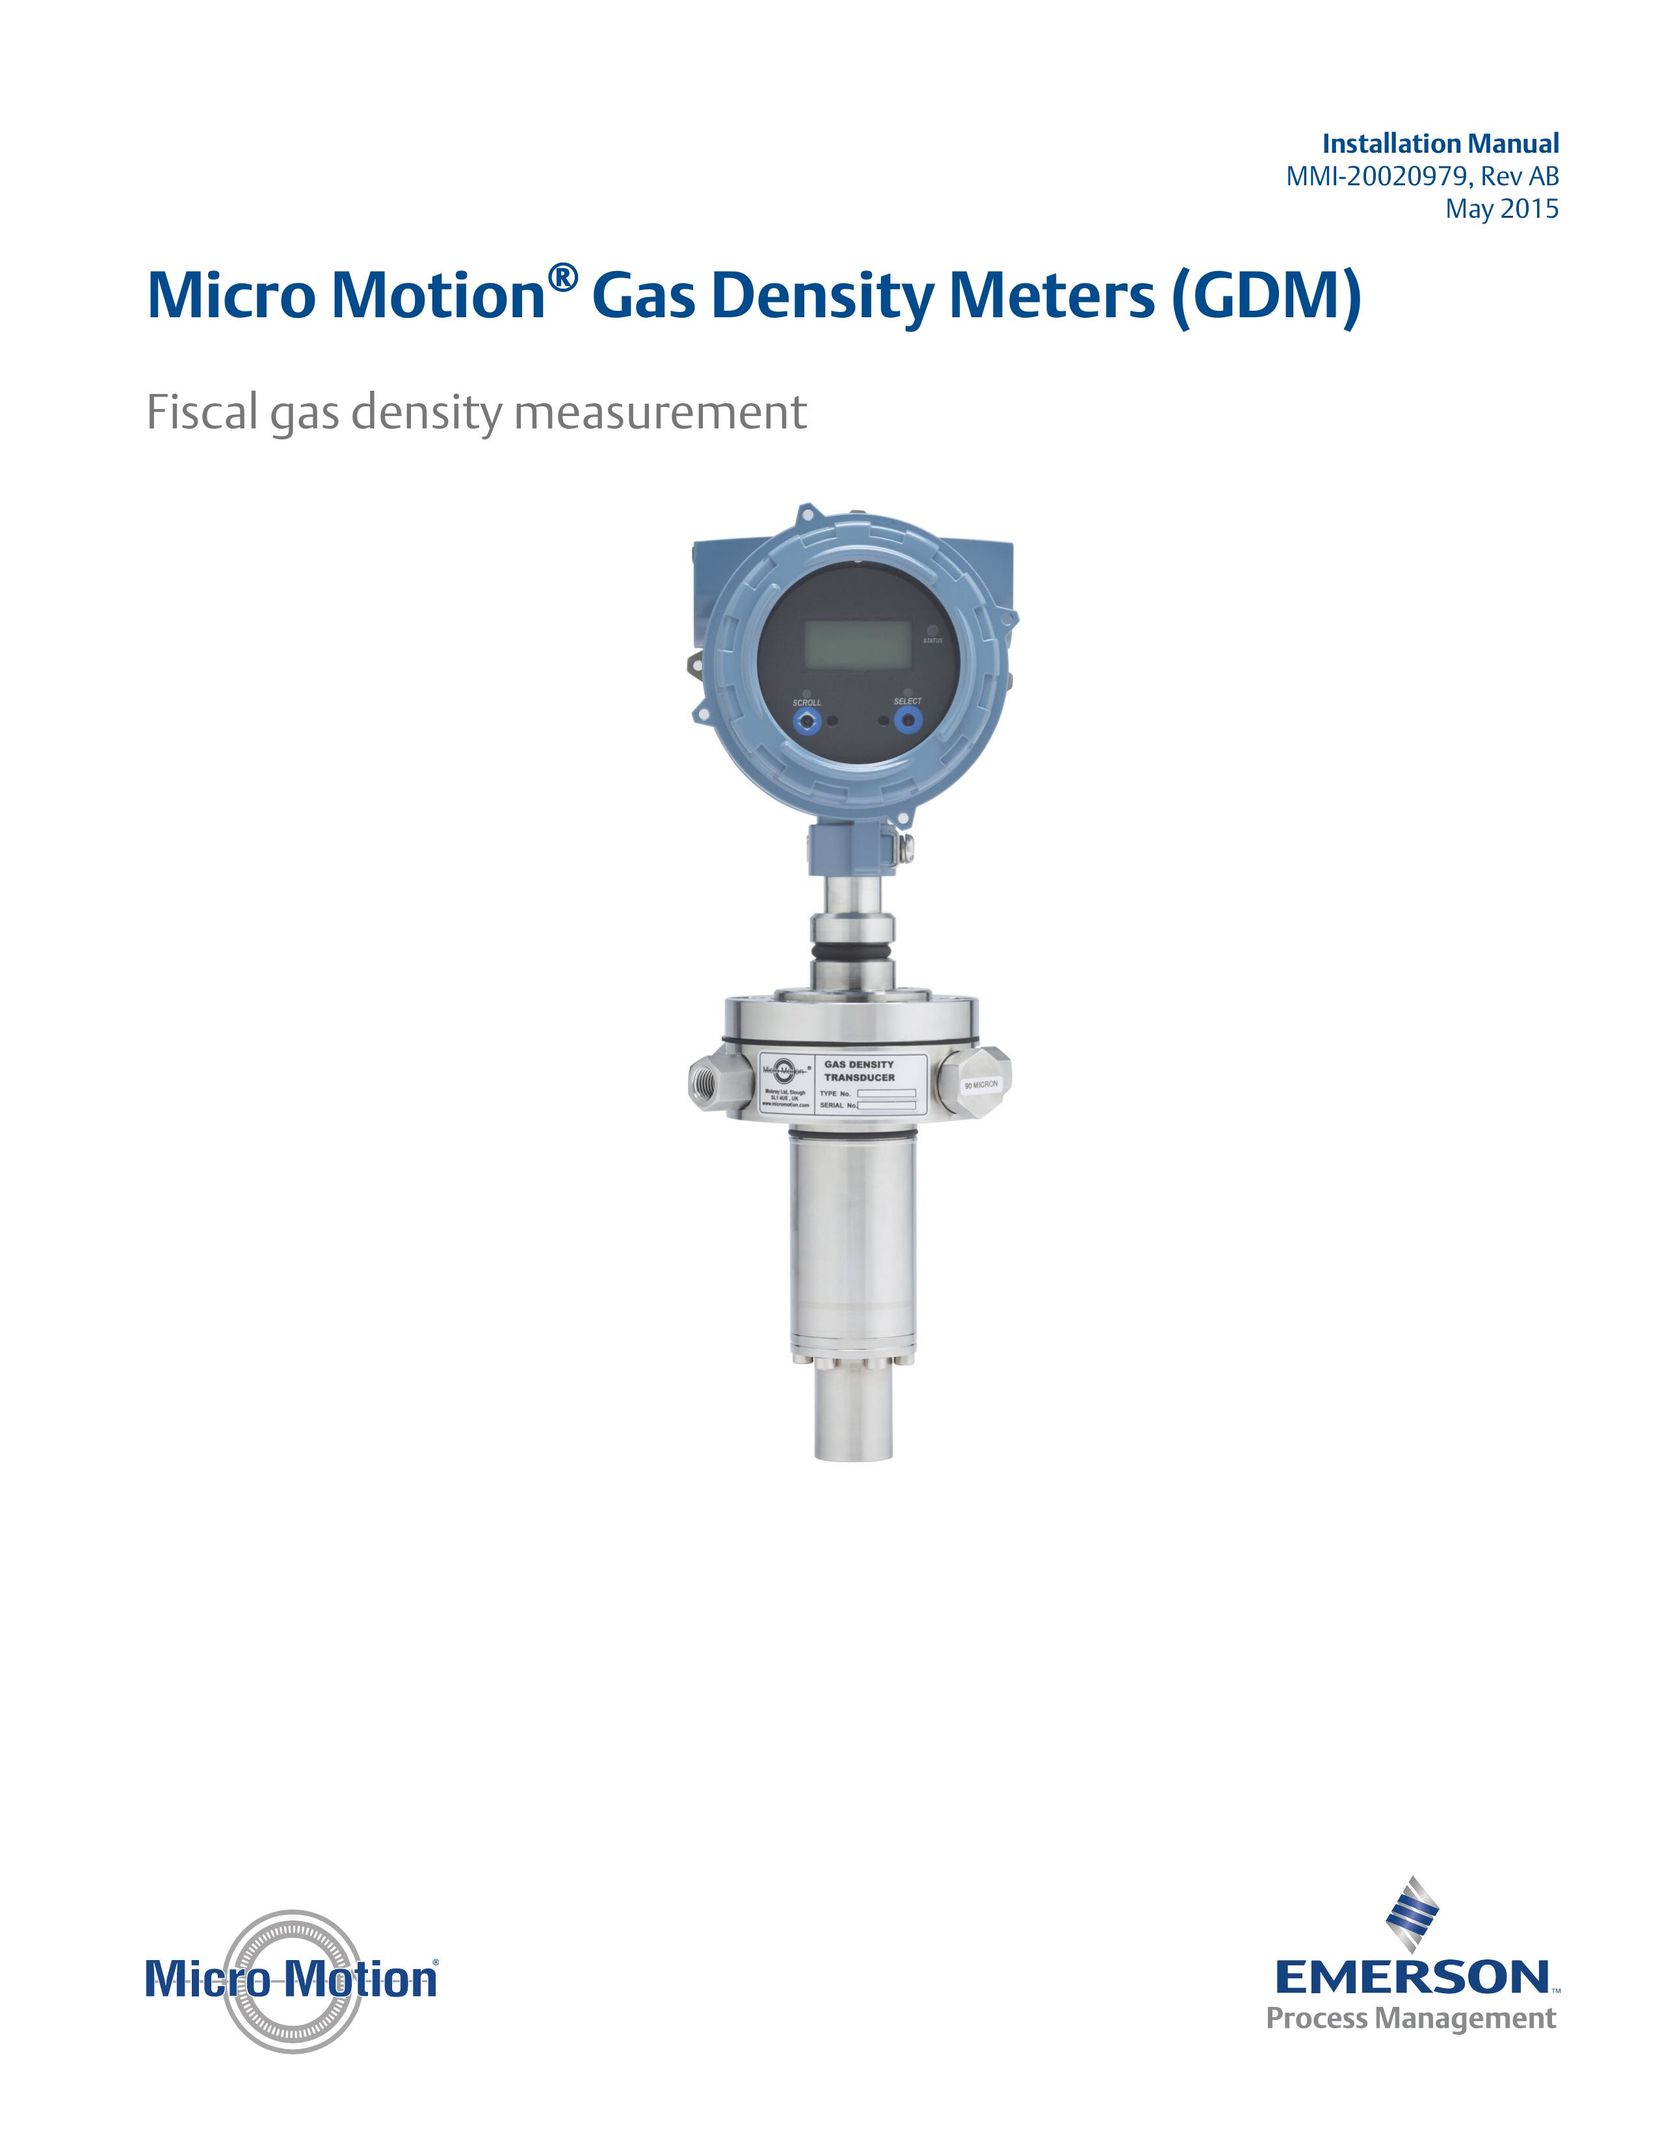 Emerson Process Management MMI-20020979 Carbon Monoxide Alarm User Manual